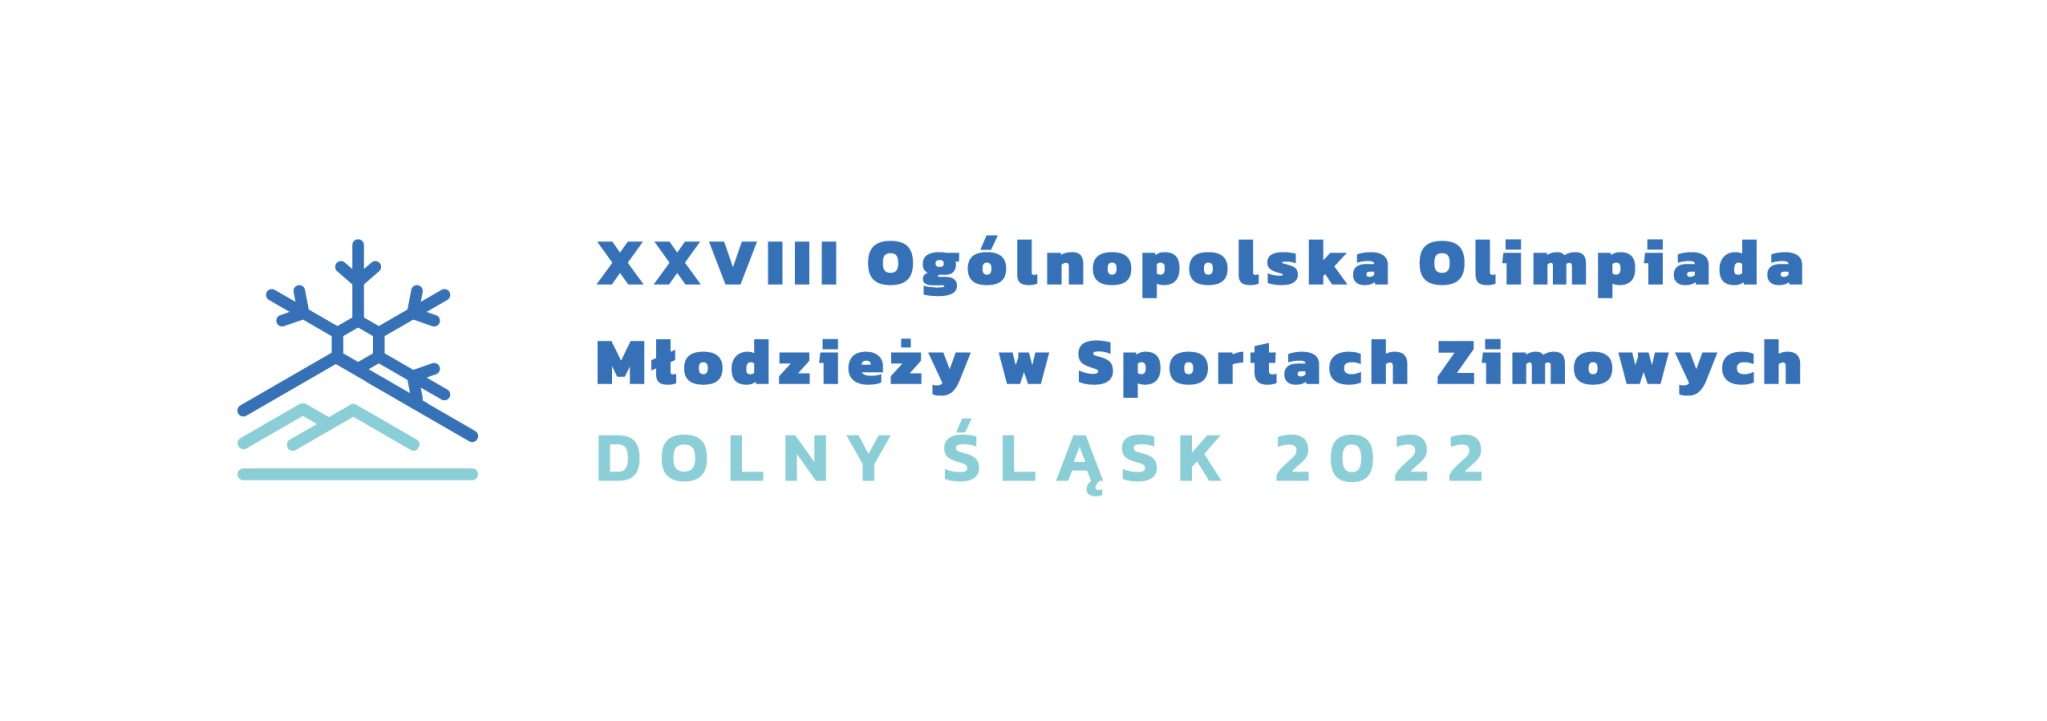 XXVIII Ogólnopolska Olimpiada Młodzieży w Sportach Zimowych Dolny Śląsk 2022